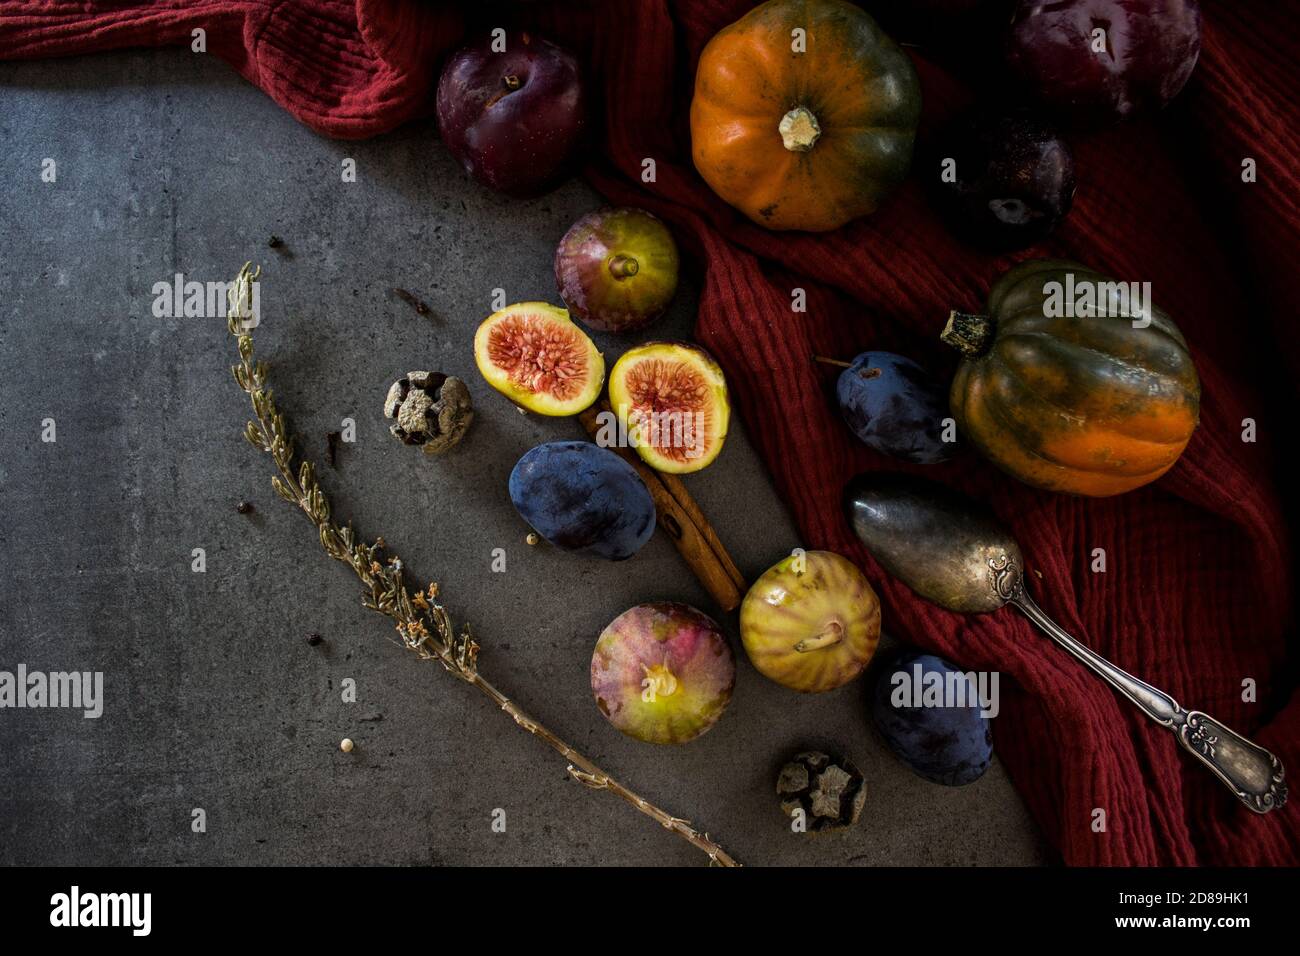 Frisches Obst und Gemüse auf dem Tisch. Edelsteinkürbis, Pflaumen, Feigen und Silberlöffel auf grauem Hintergrund. Draufsicht Foto der Herbsternte. Stockfoto